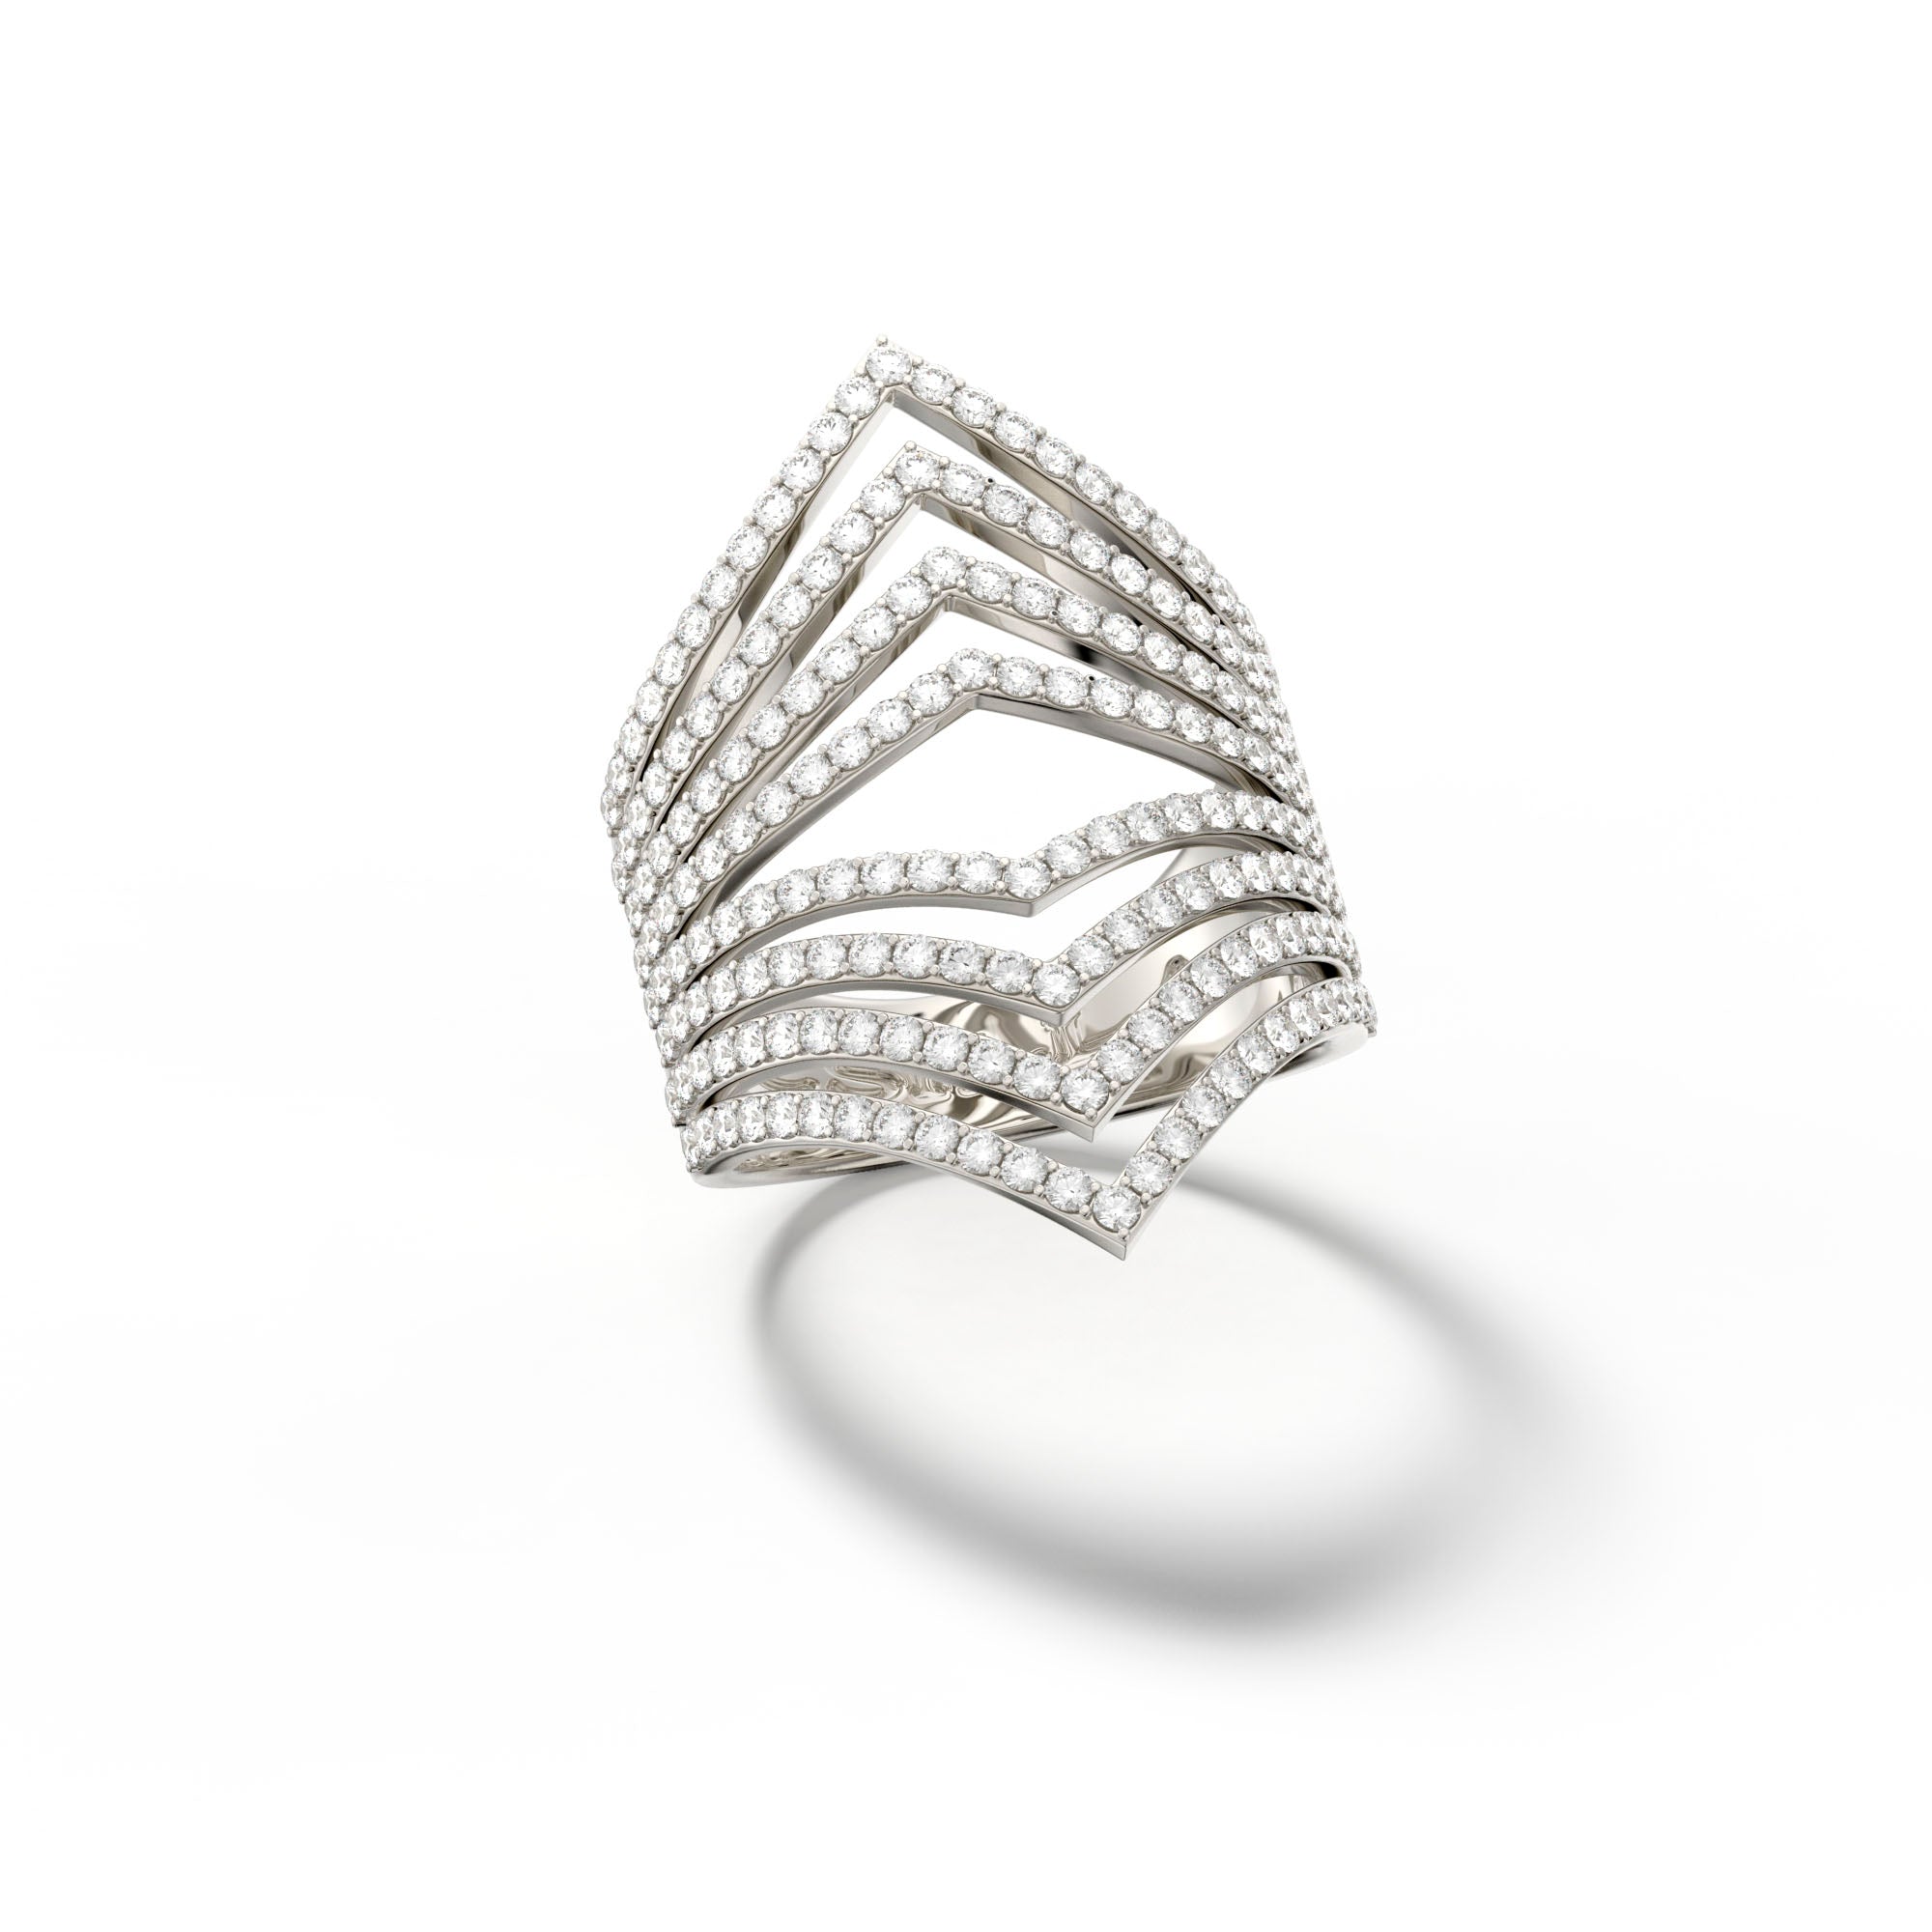 Csillag Fame - White Gold Diamond Ring - Csilla Jewelry